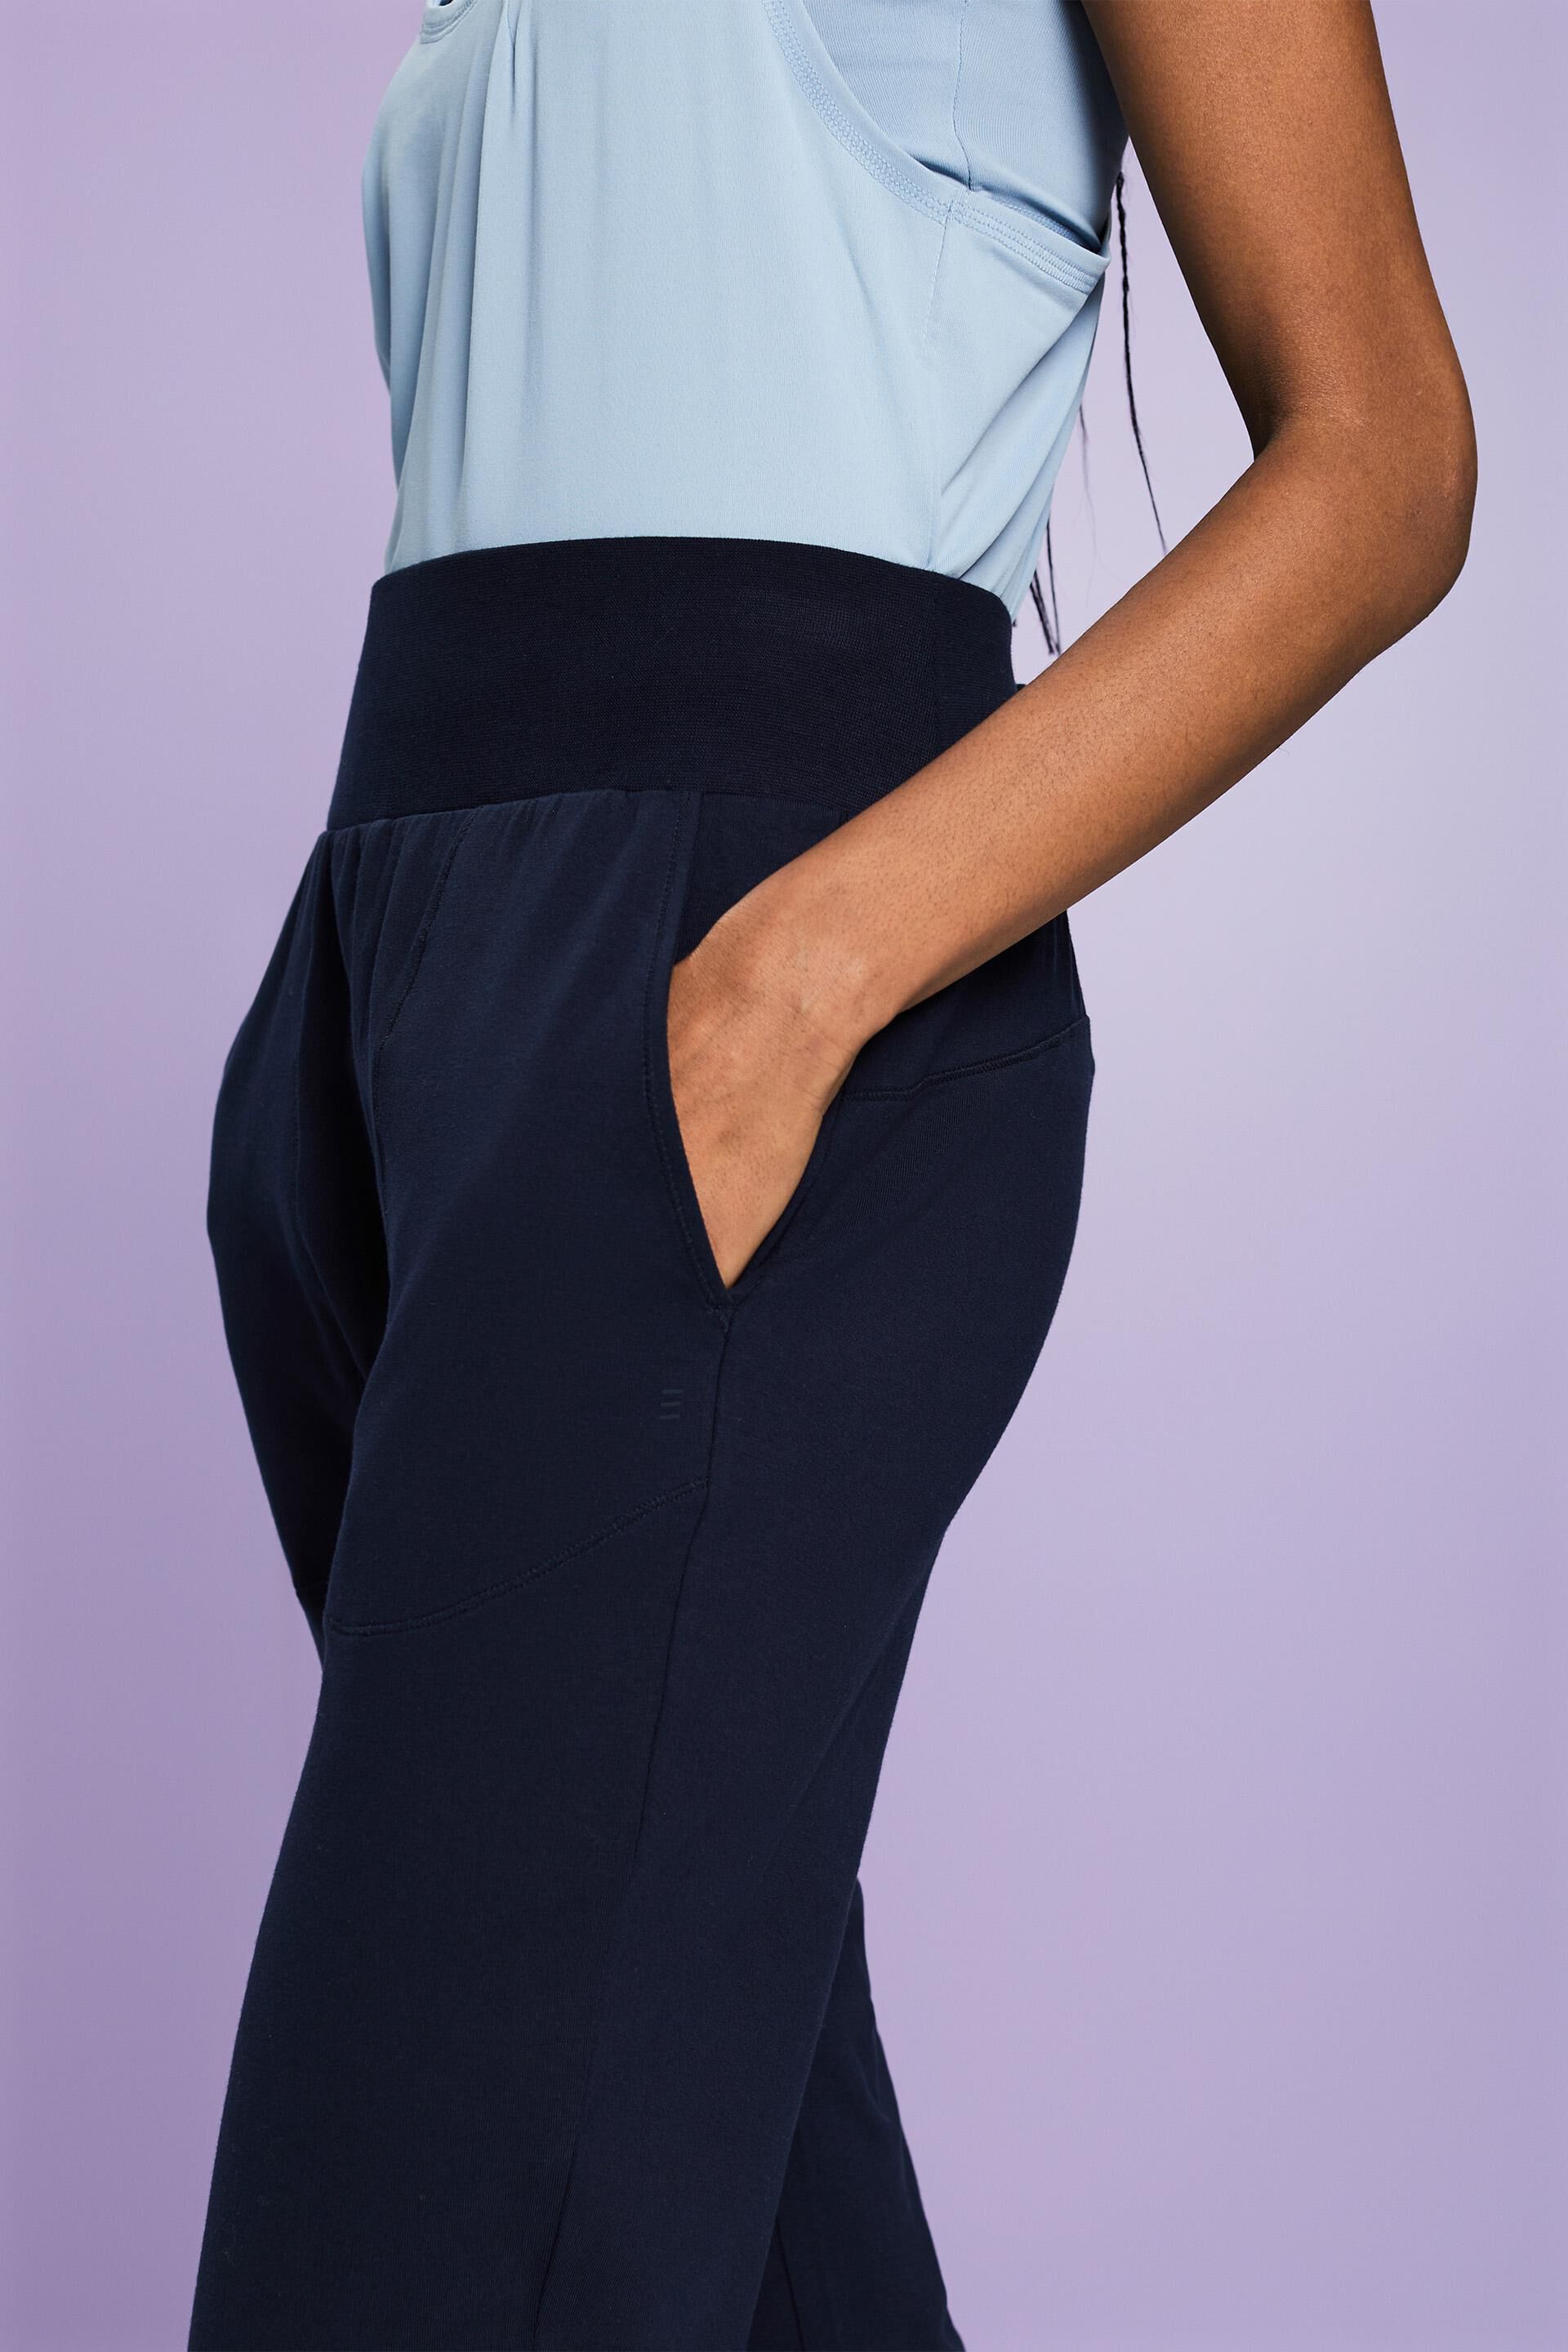 ESPRIT - Sports Jersey Pants at our online shop